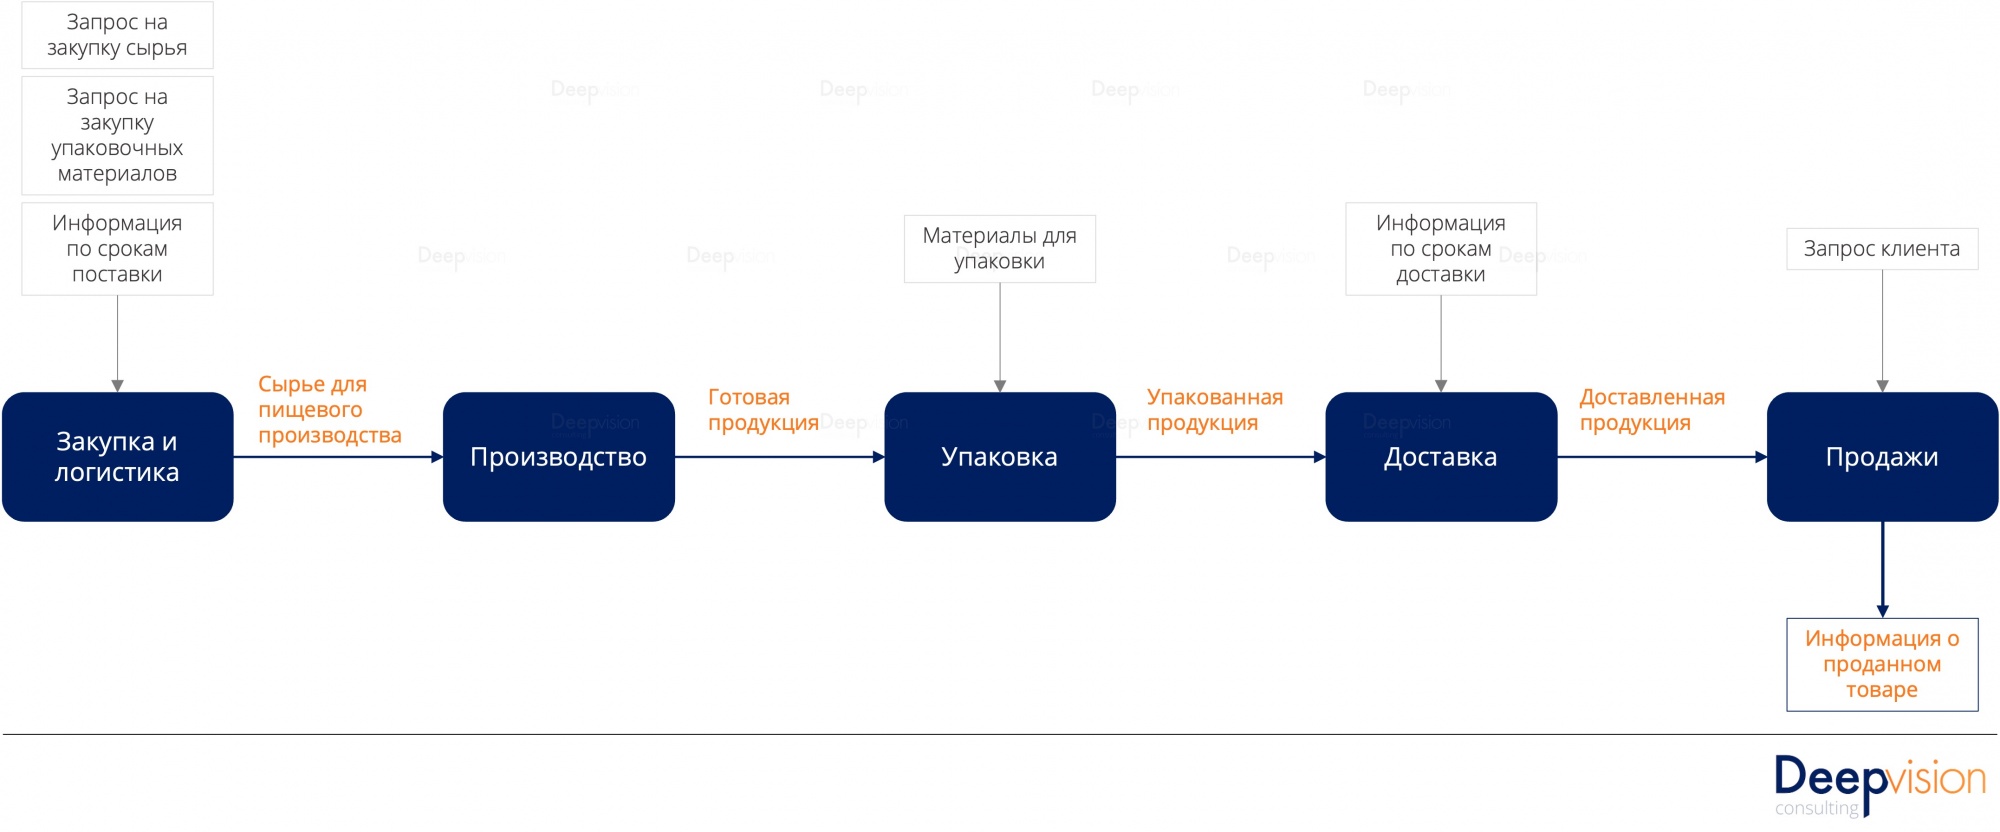 Архитектура процессов как часть бизнес-архитектуры  - Основные входы и выходы цепочки создания ценности в компании М  .jpg